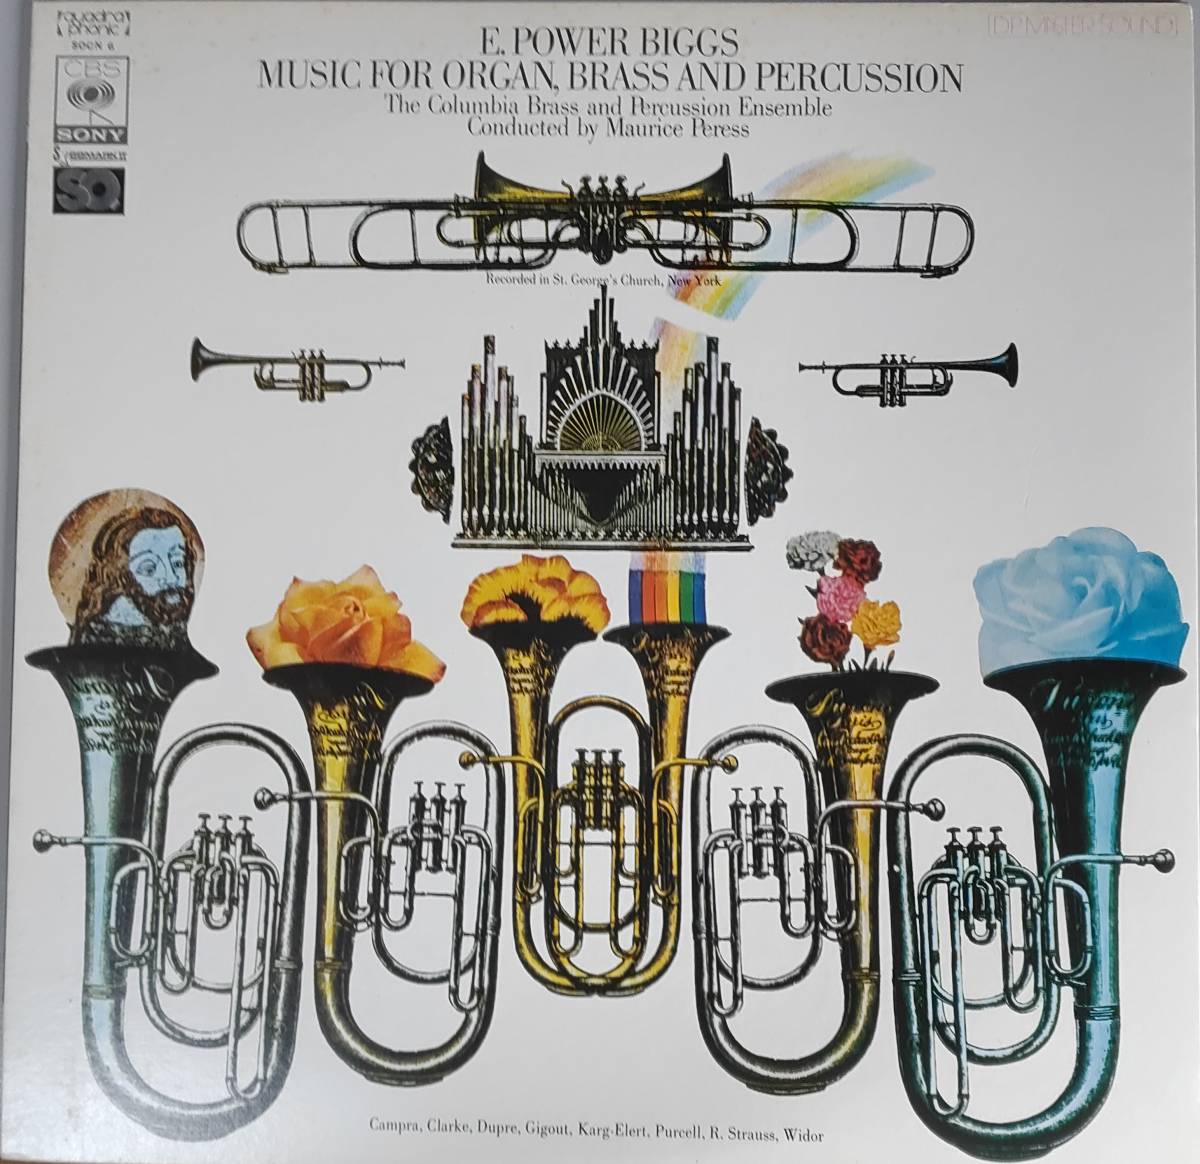 美盤　モーリス・ペレス指揮 　LPレコード「オルガン、ブラス、パーカッションのための音楽」_画像1